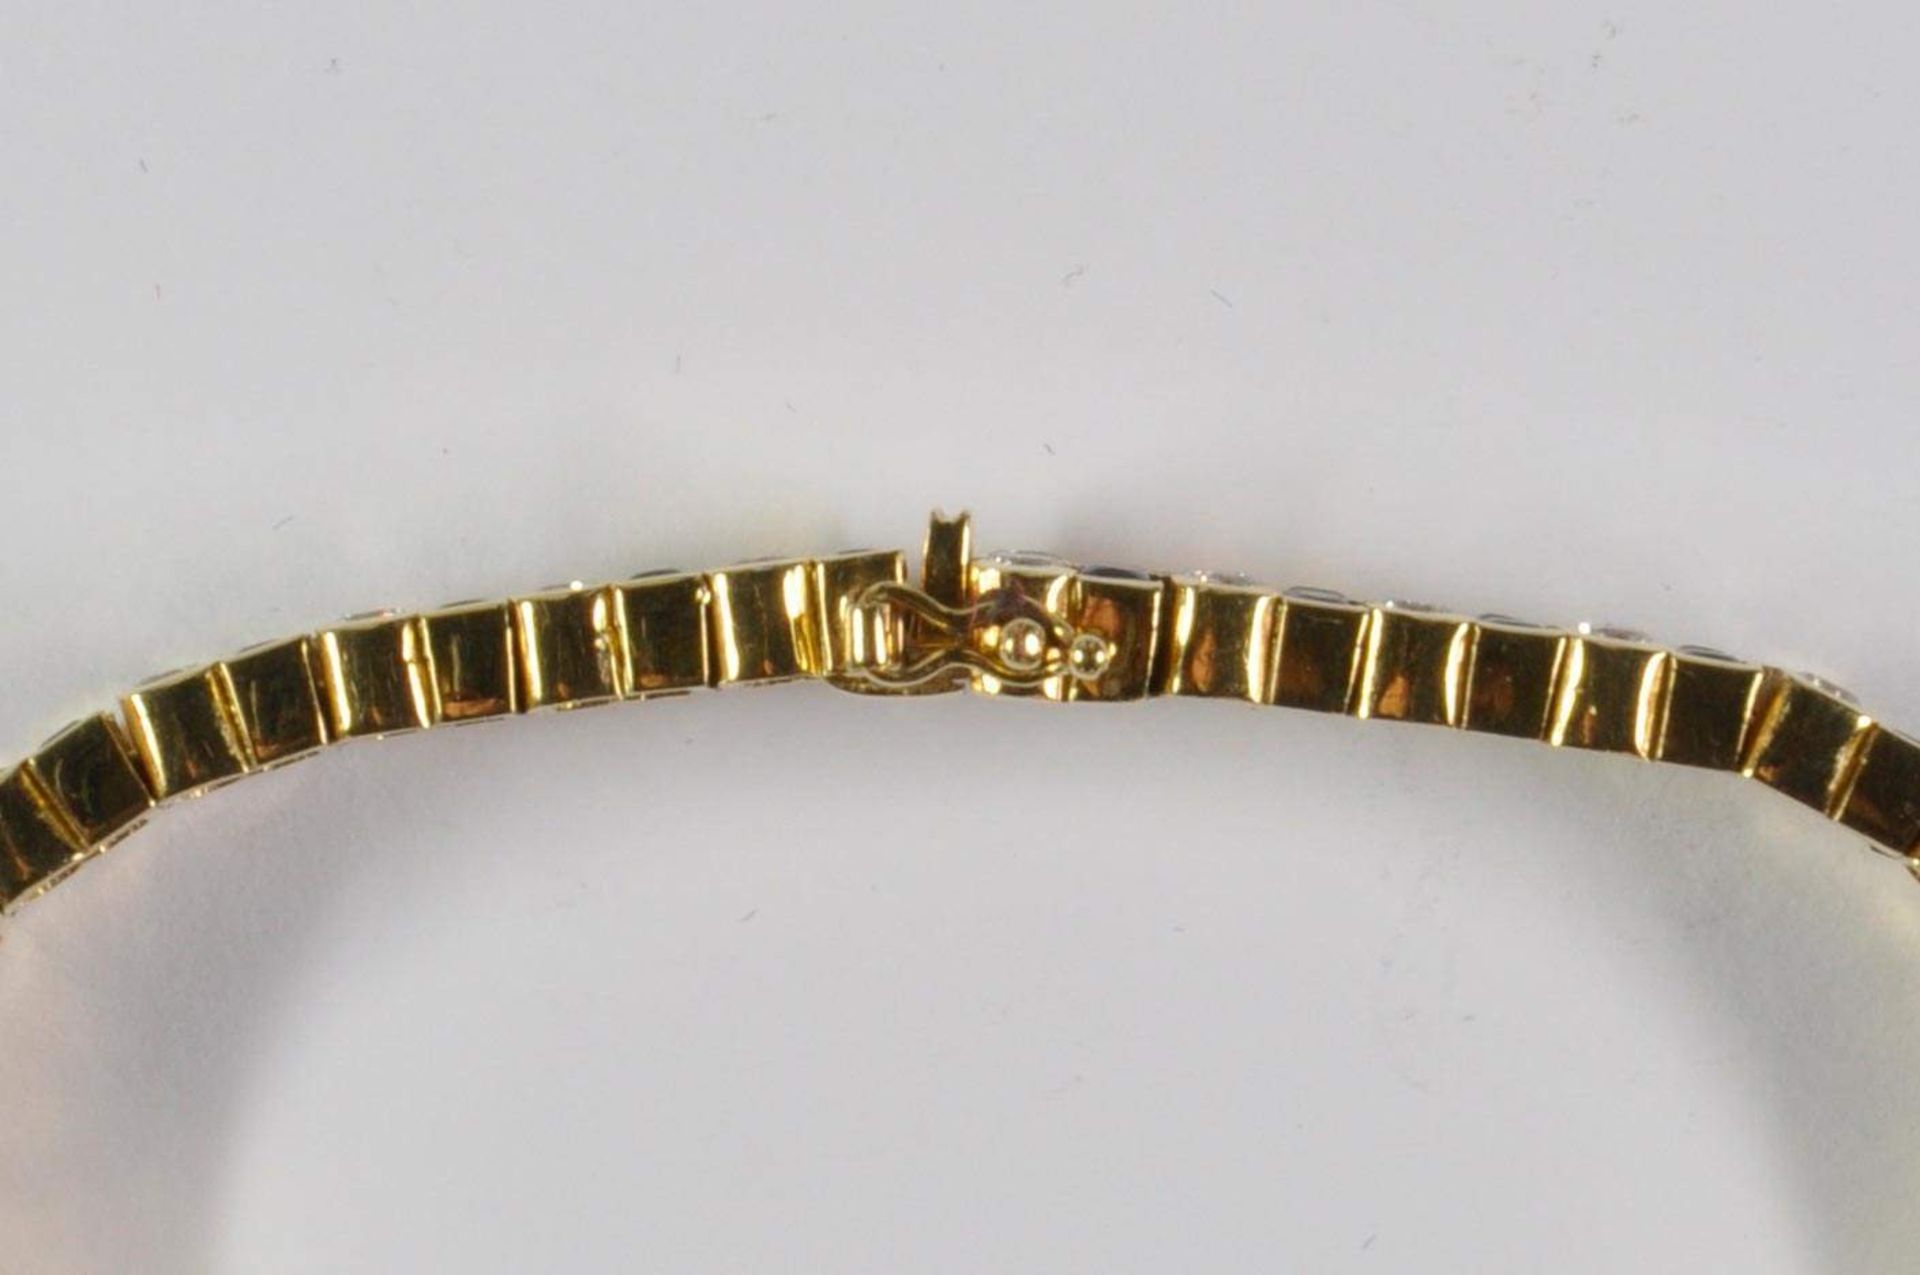 Saphir-Brillant-Armband, 750 Gelbgold, Punze, 66 Brillanten von zus. ca. 3,2ct, 64 Saphiren von zus. - Bild 15 aus 20